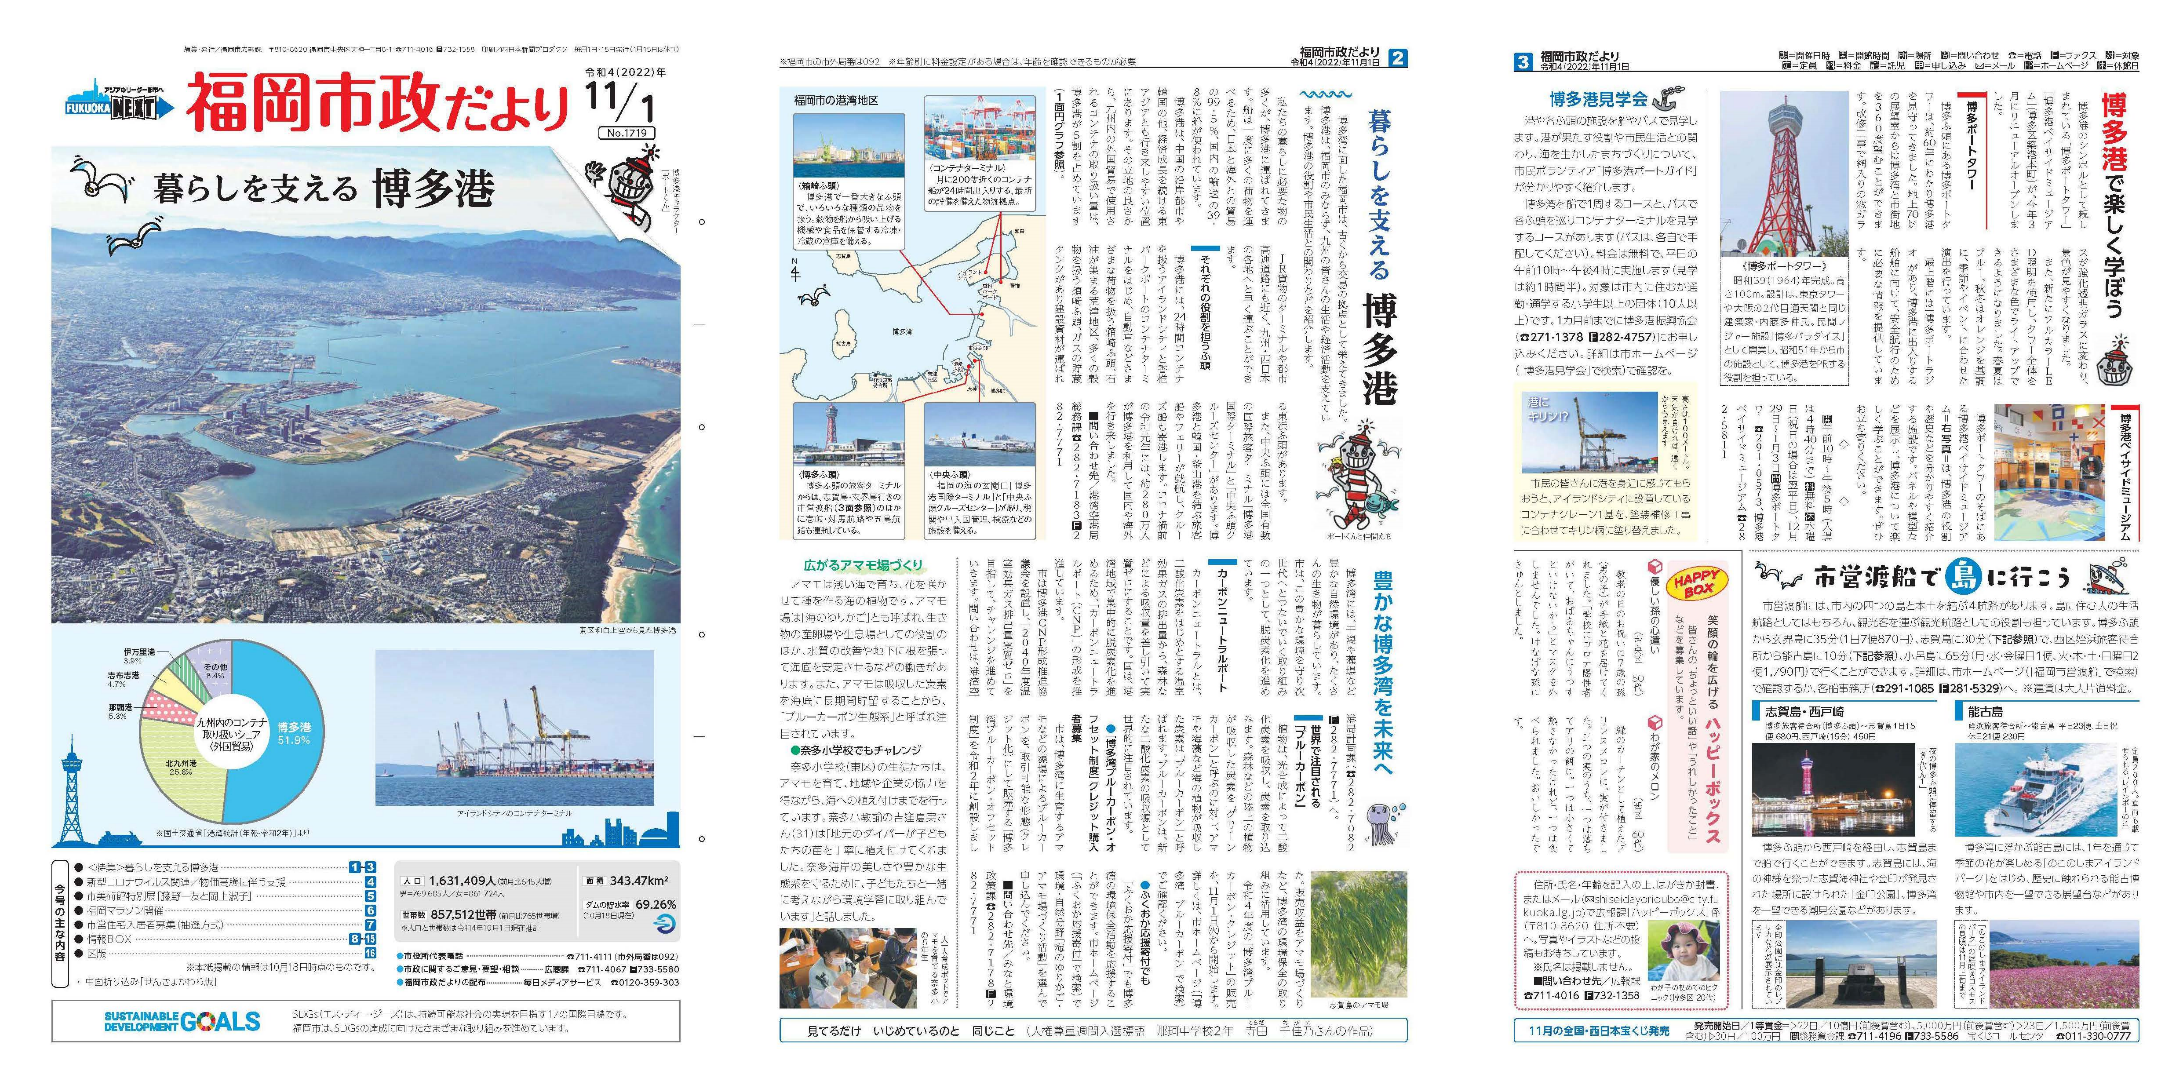 福岡市政だより2022年11月1日号の表紙から2面の紙面画像